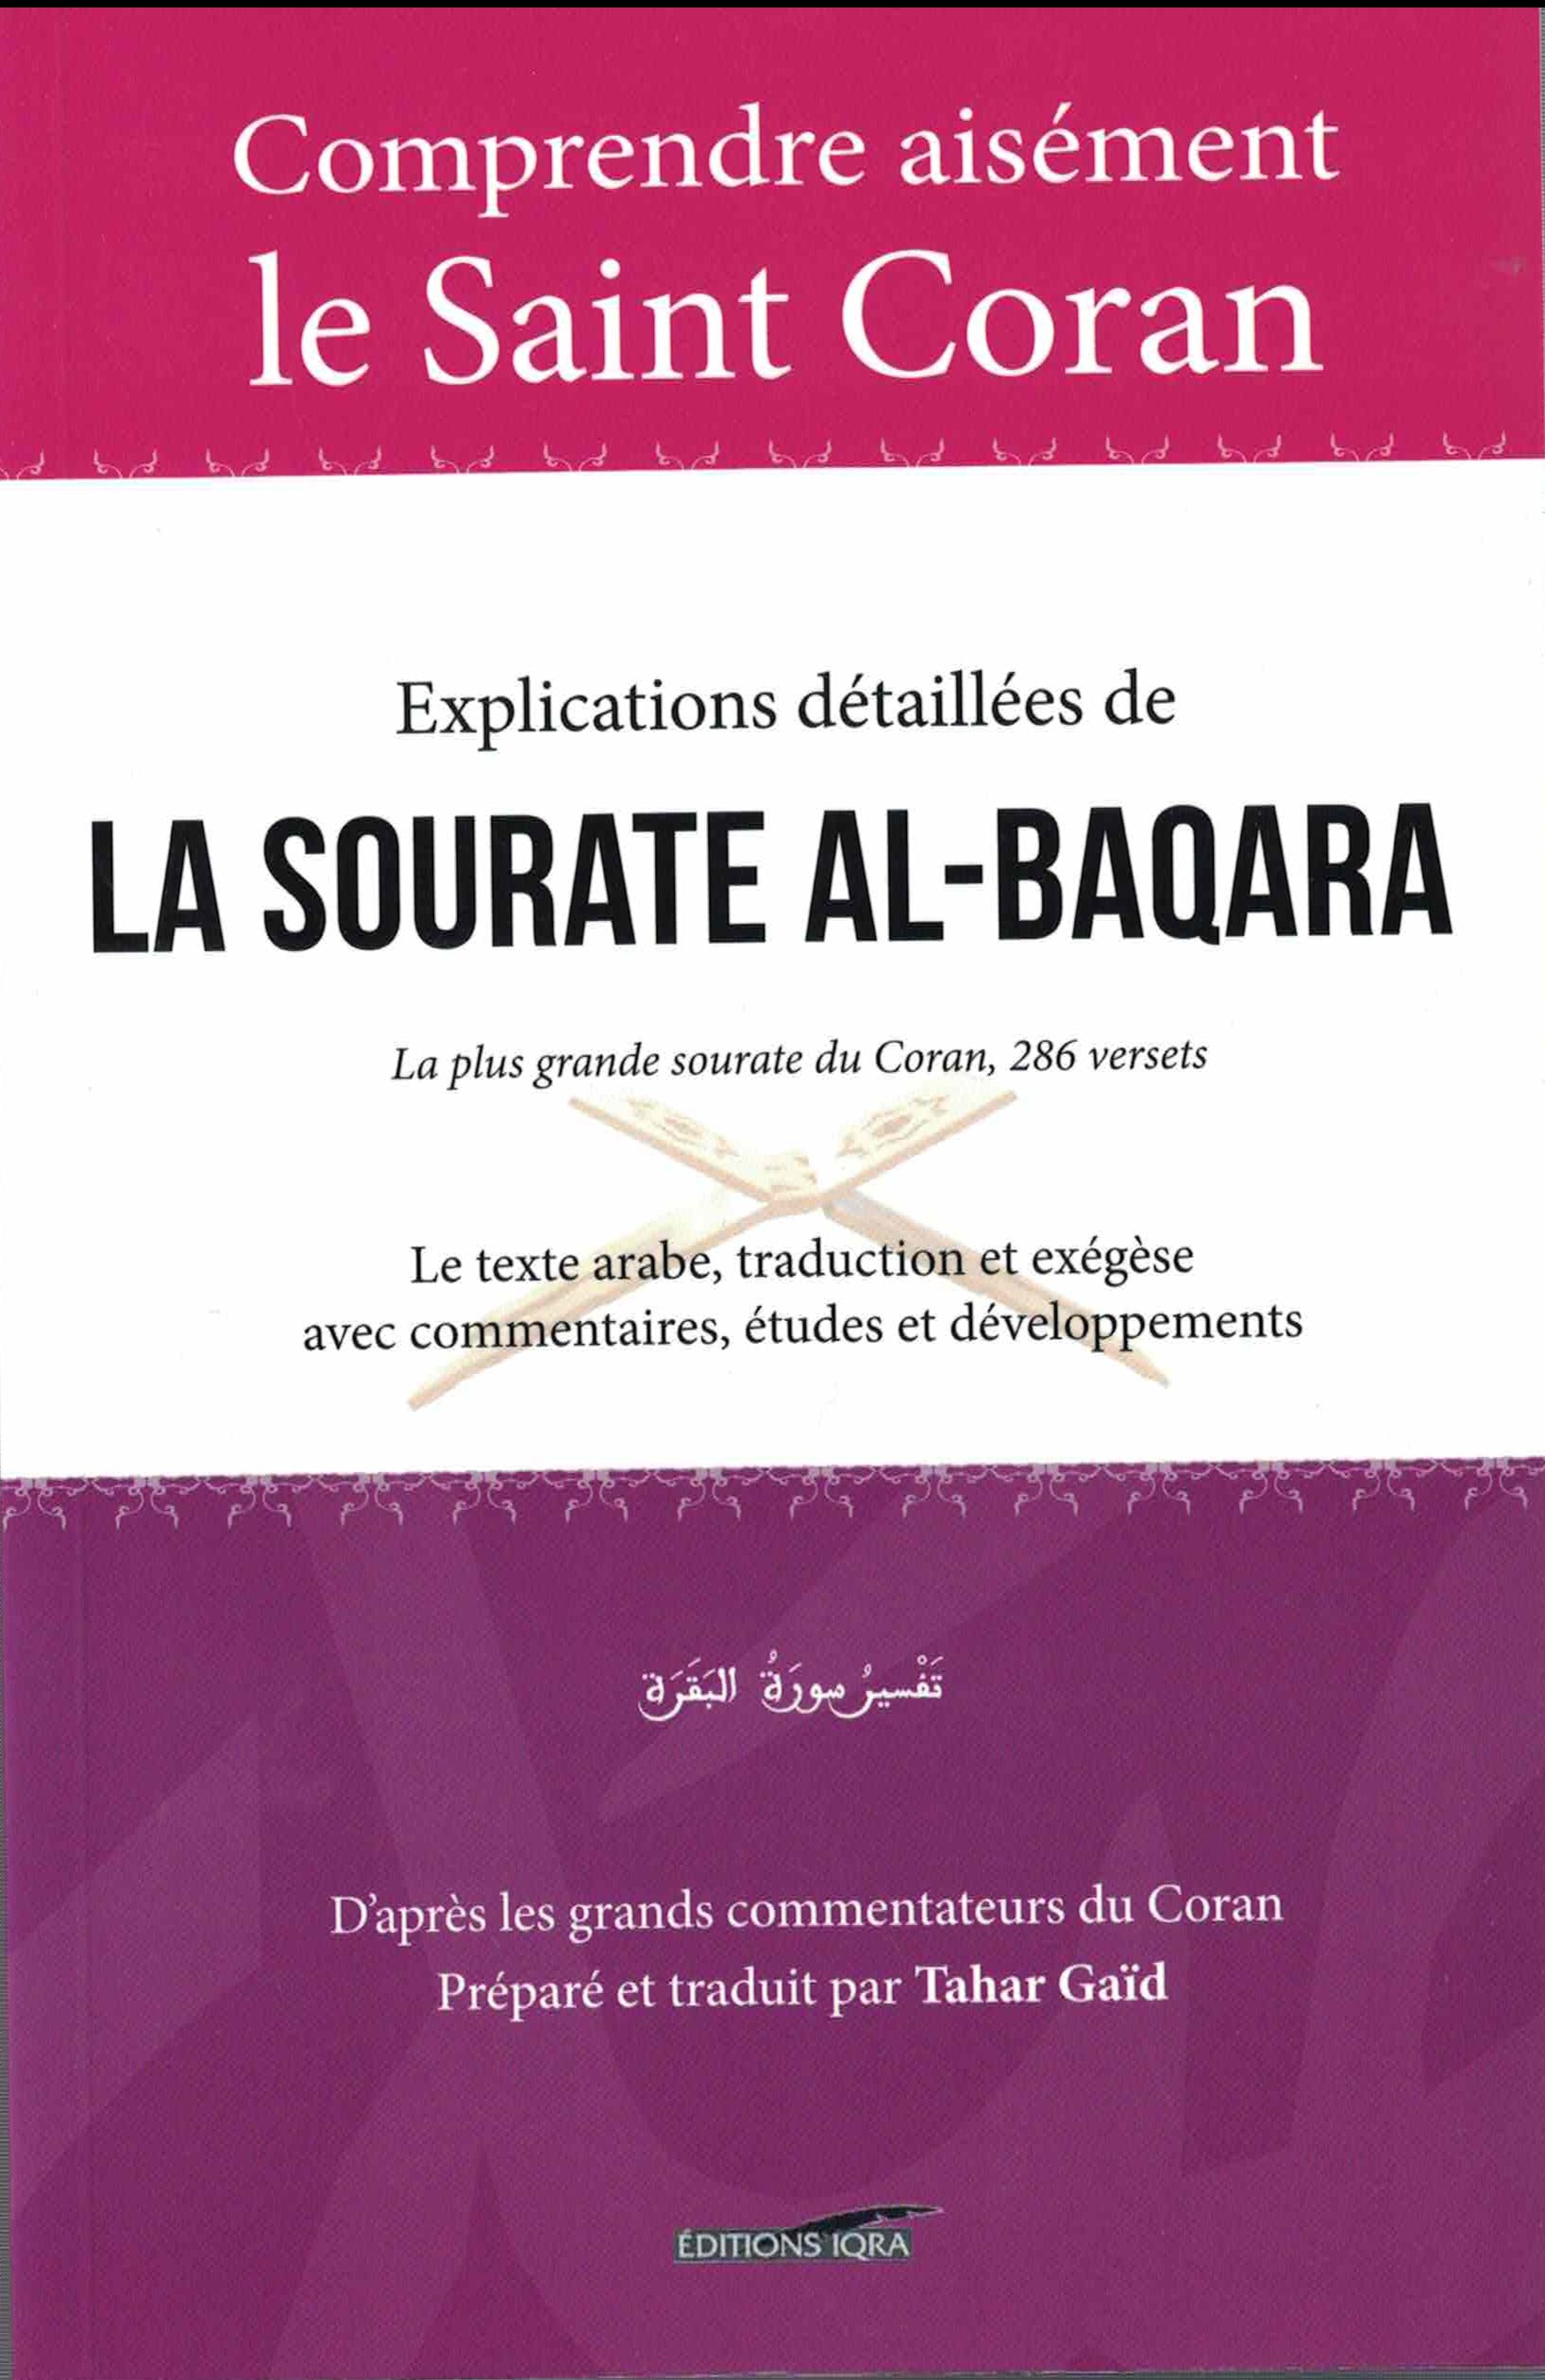 comprendre-aisement-le-saint-coran-explications-detaillees-de-la-sourate-al-baqara